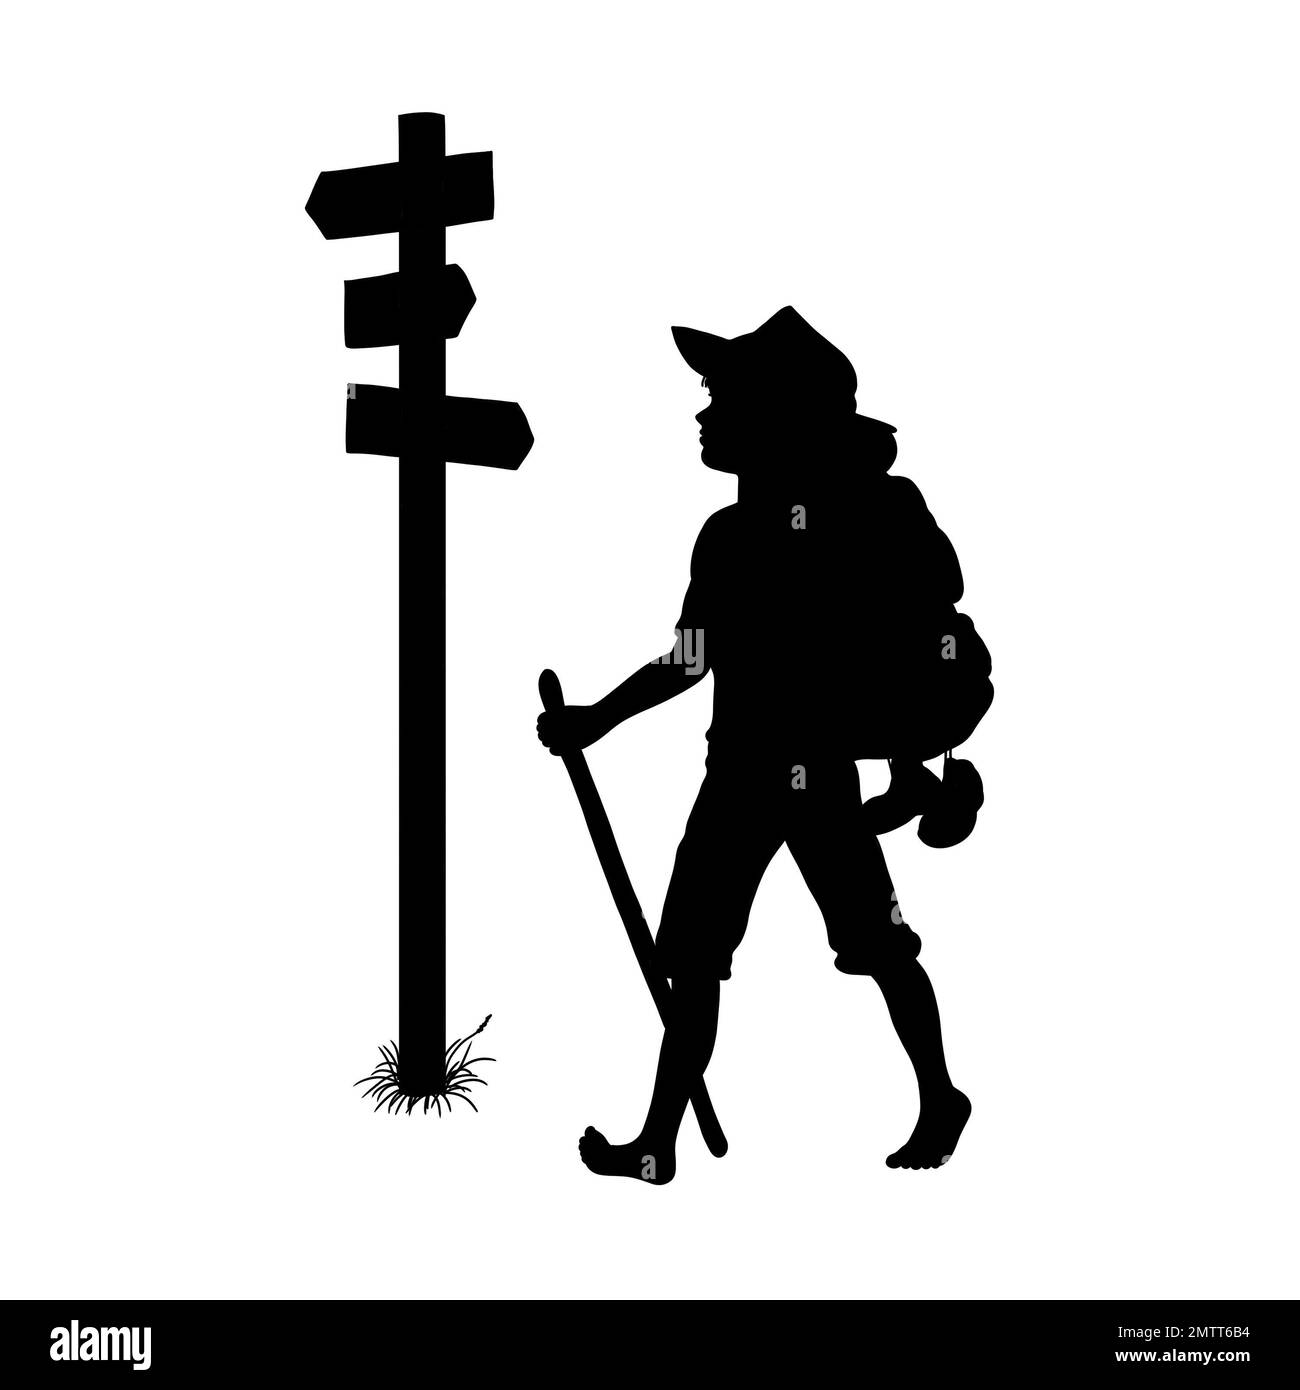 Schwarze Silhouette eines Jungen oder Reisenden, der barfuß mit einem Rucksack und Gehstock wandert oder auf dem Walzer ist und an einem Wegweiser vorbeiläuft Stockfoto